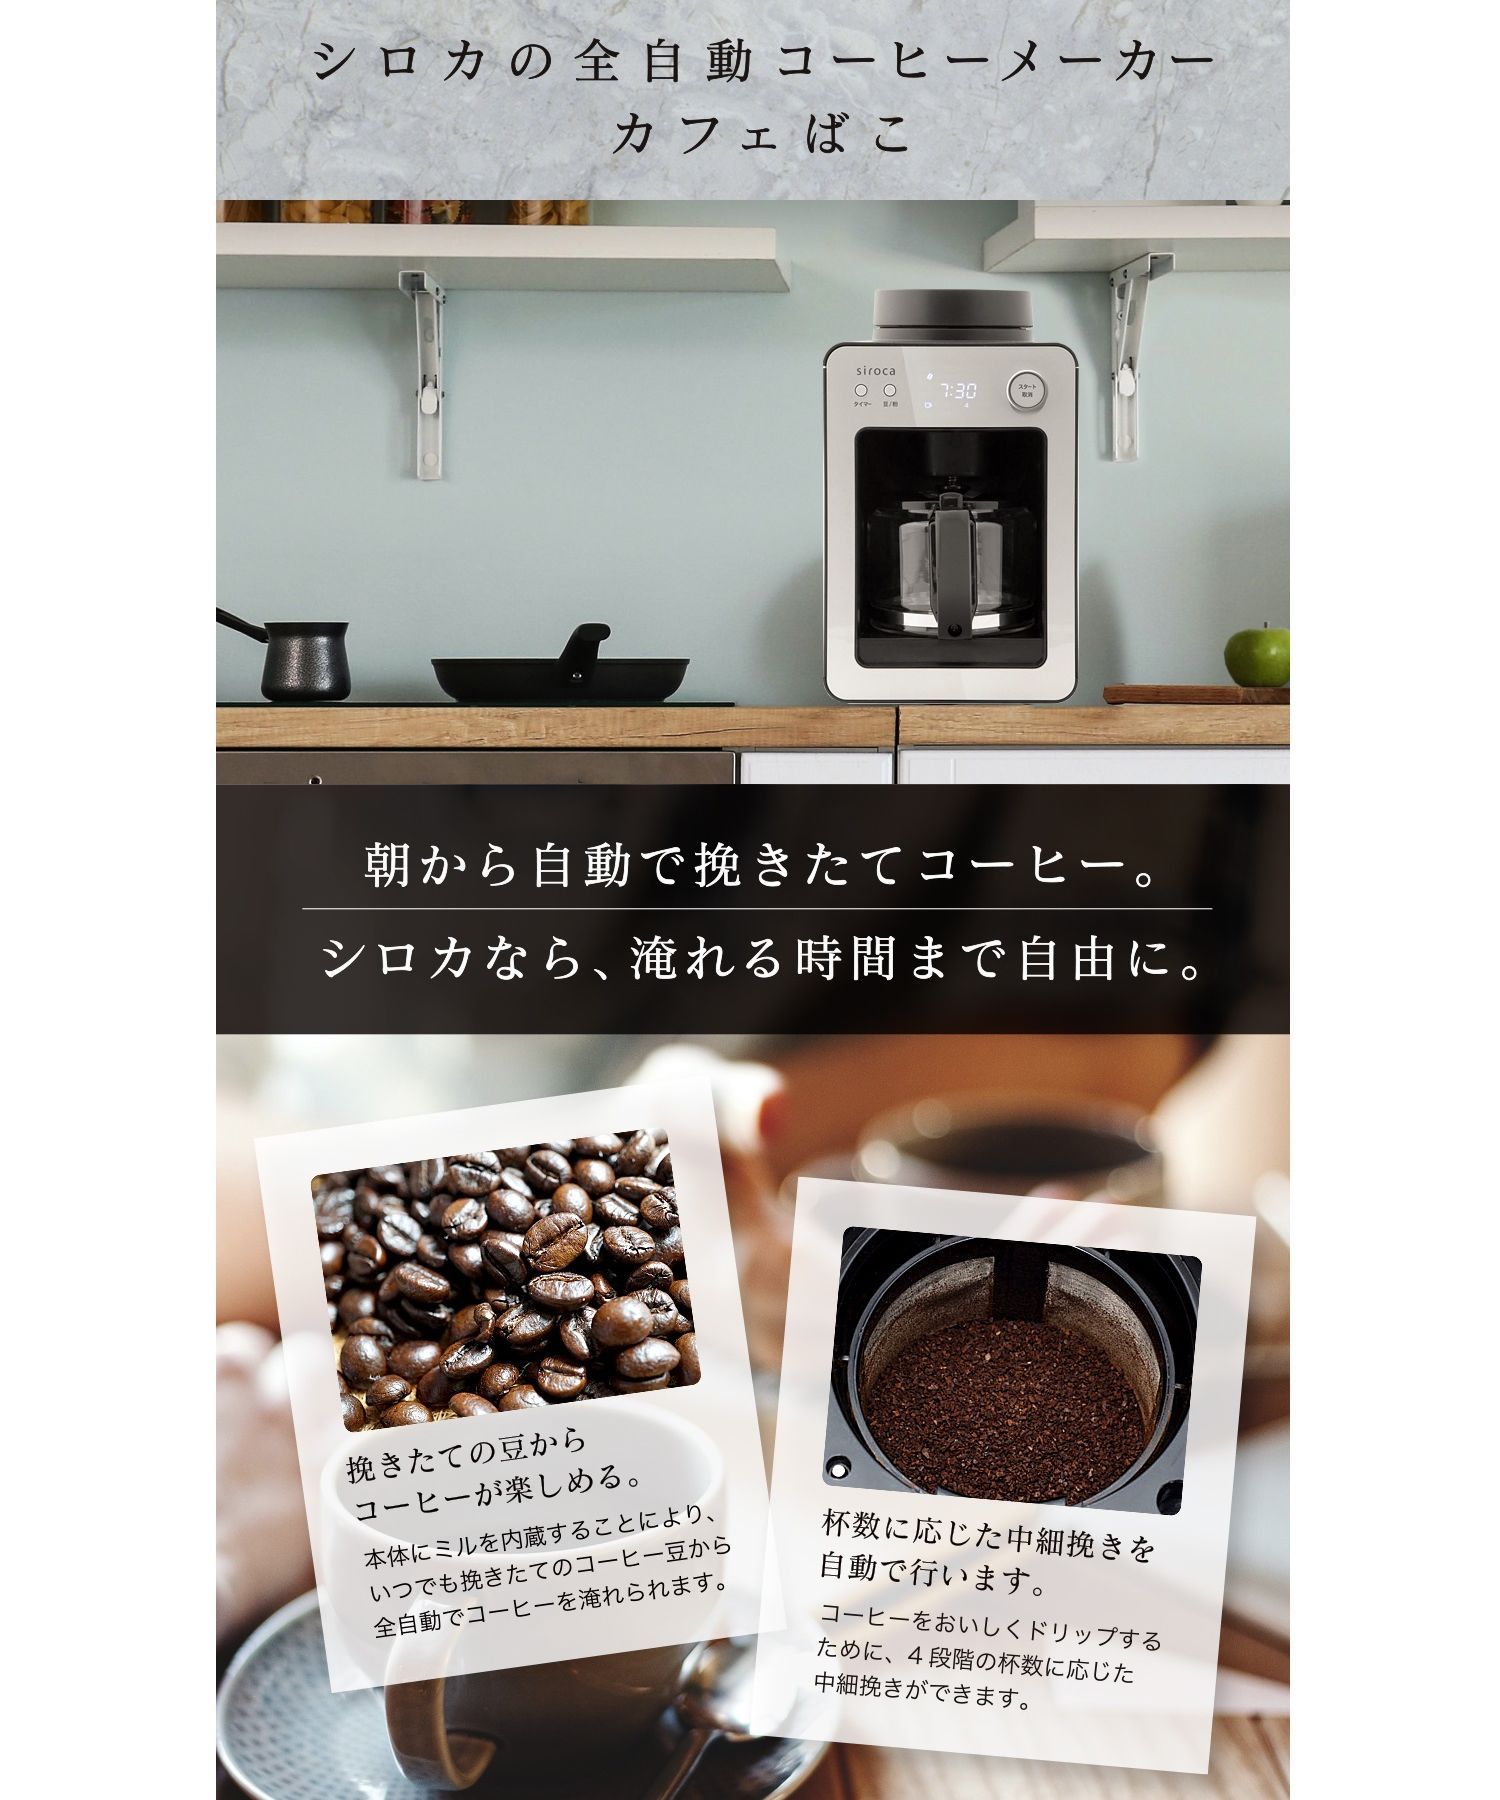 【siroca】全自動コーヒーメーカー カフェばこ(ステンレスサーバー) SC-A371 ONE SIZE